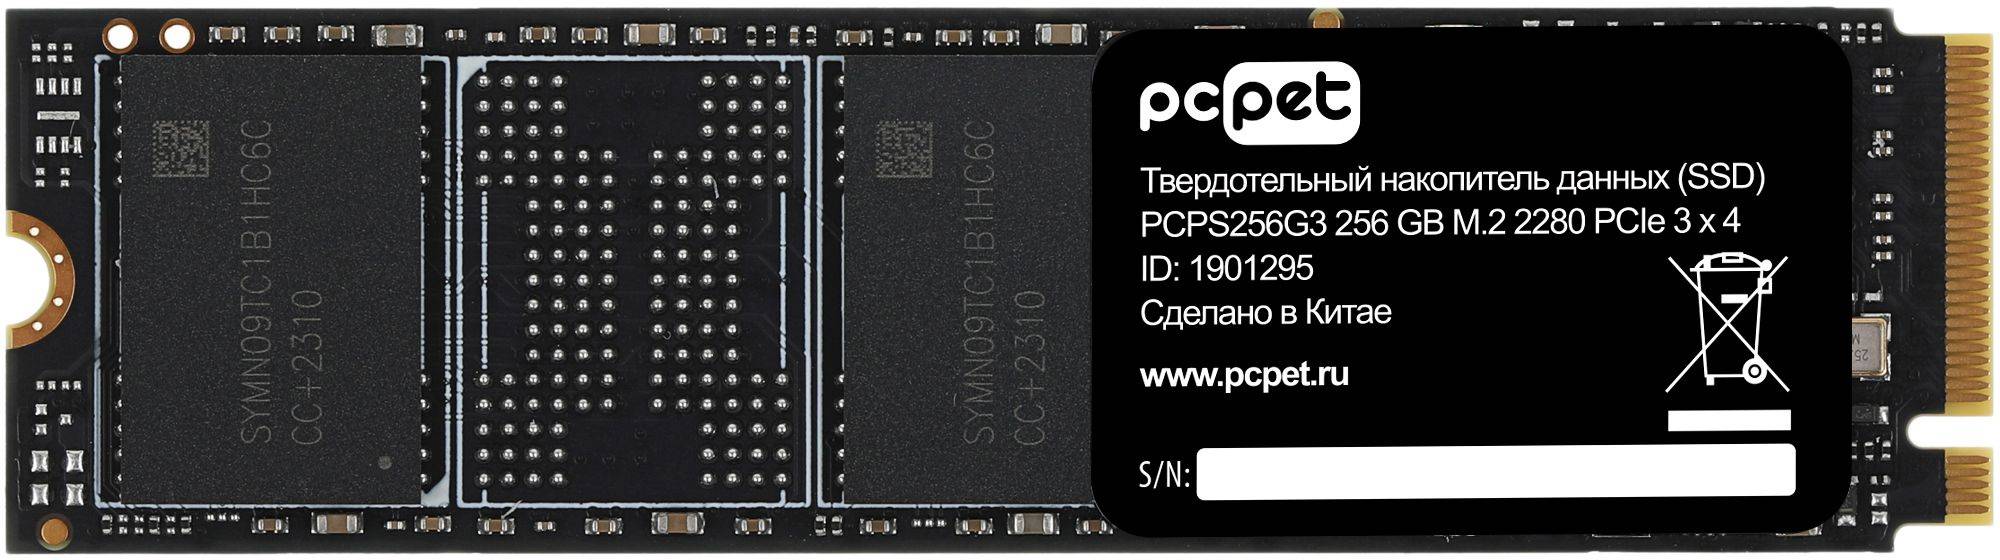 Твердотельный накопитель PC Pet 256ГБ, M.2 2280, PCI-E 3.0 x4, M.2 PCPS256G3